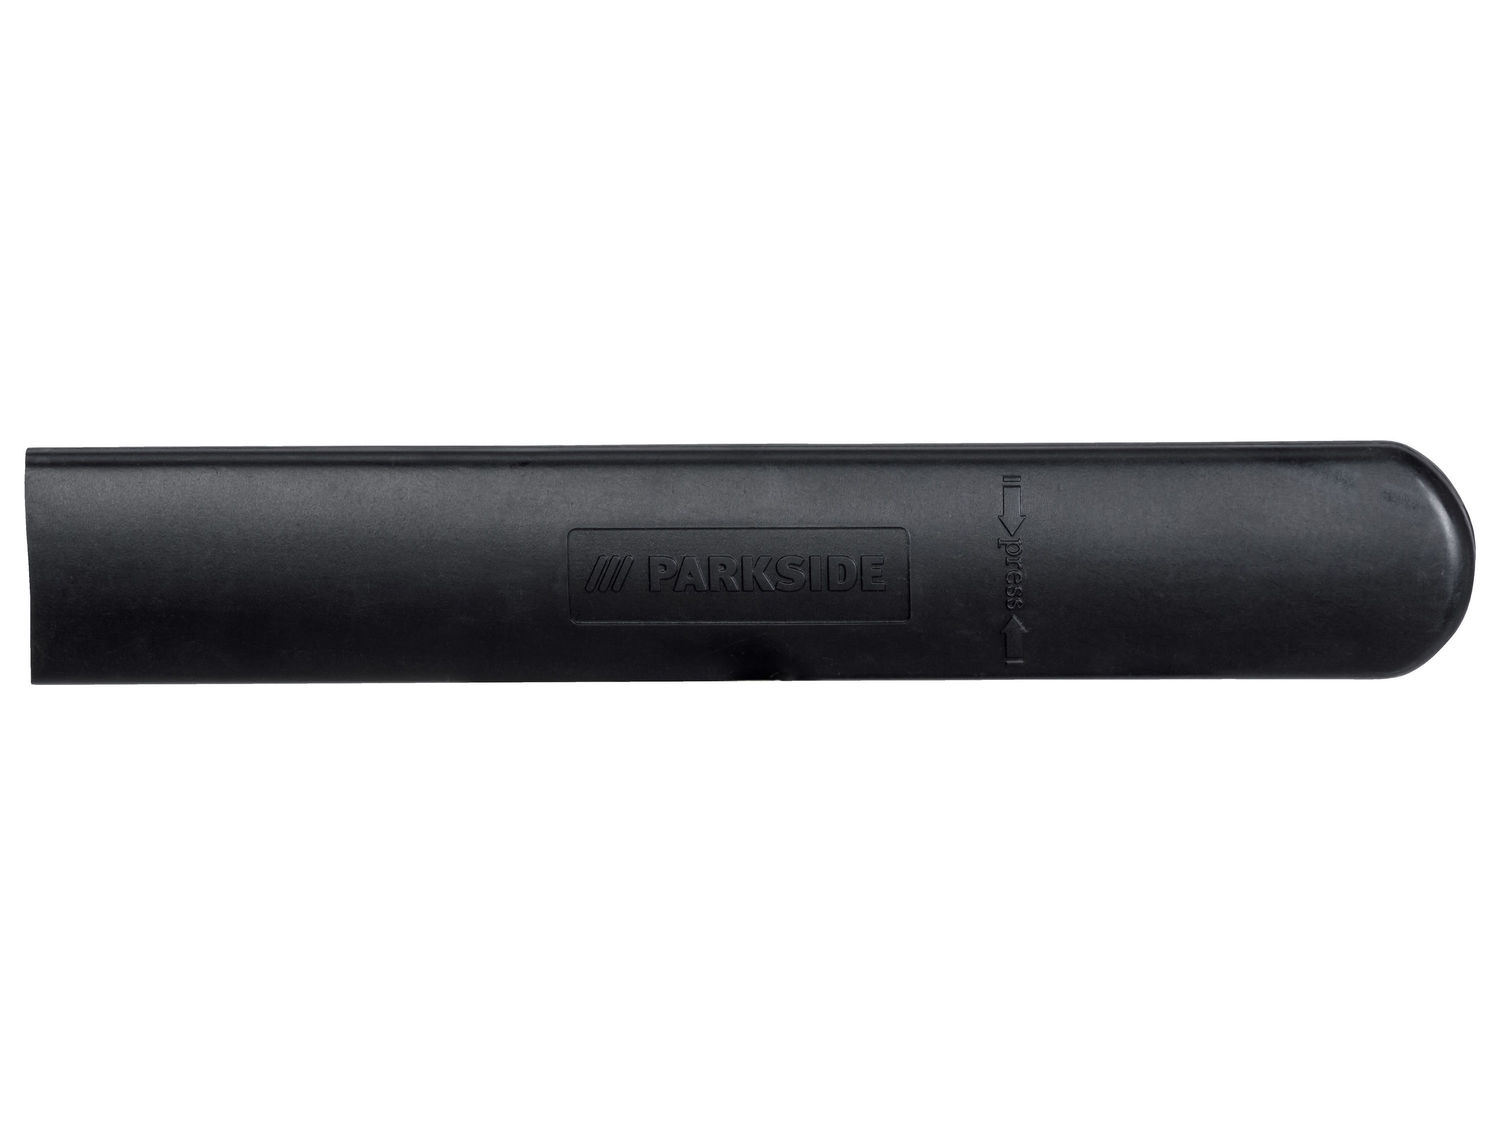 Akumulatorowe nożyce do żywopłotu 12 V Parkside, cena 129,00 PLN 
- nóż z ...